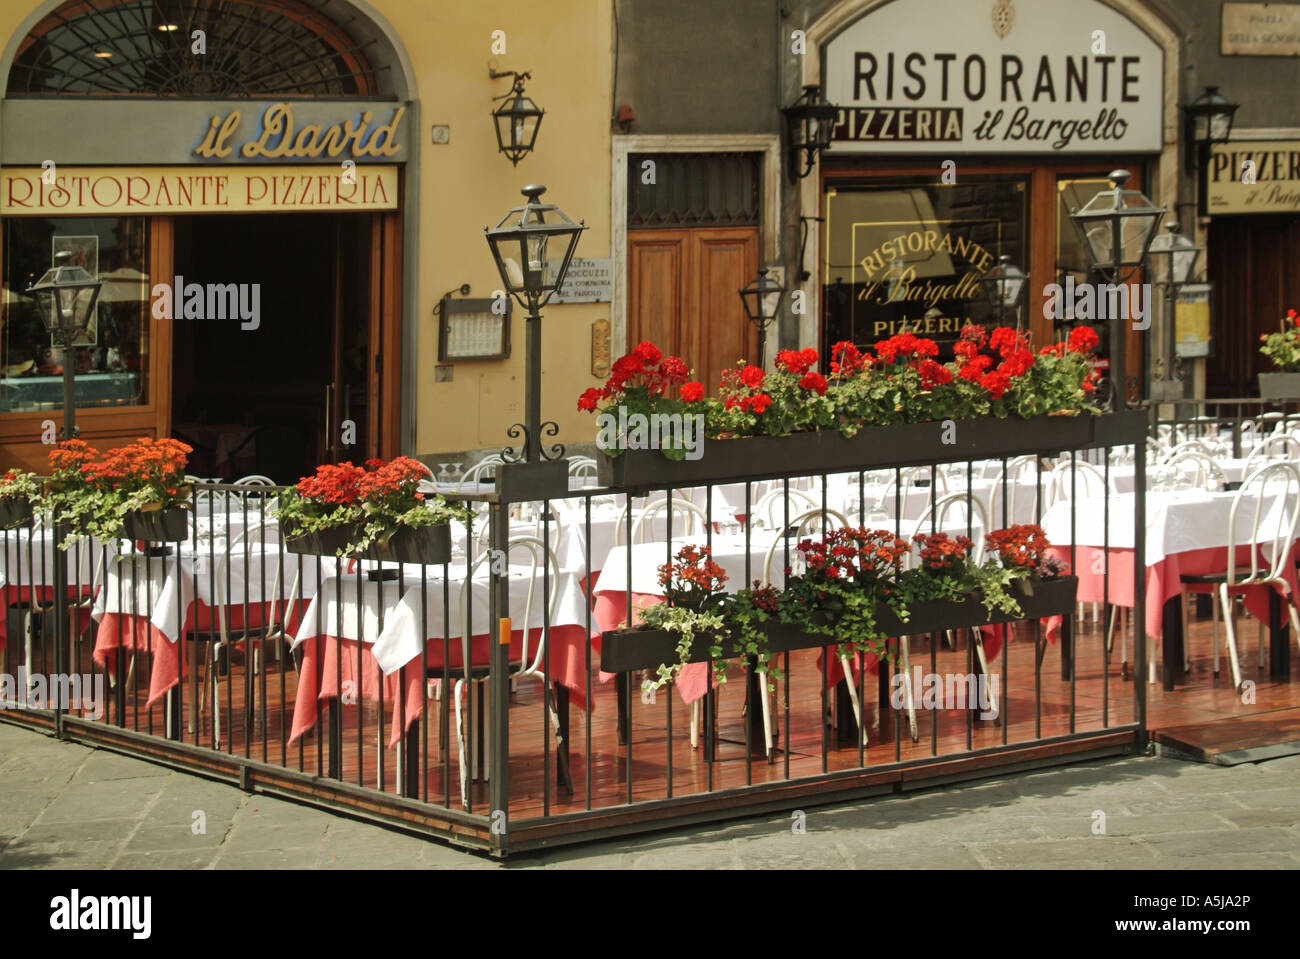 Gastronomie Restaurant Tabellen & Blumen außerhalb der Italienischen Pflaster Bars & Restaurants in der Nähe der Piazza della Signoria Loggia Lanza Florenz Toskana Italien EU Stockfoto